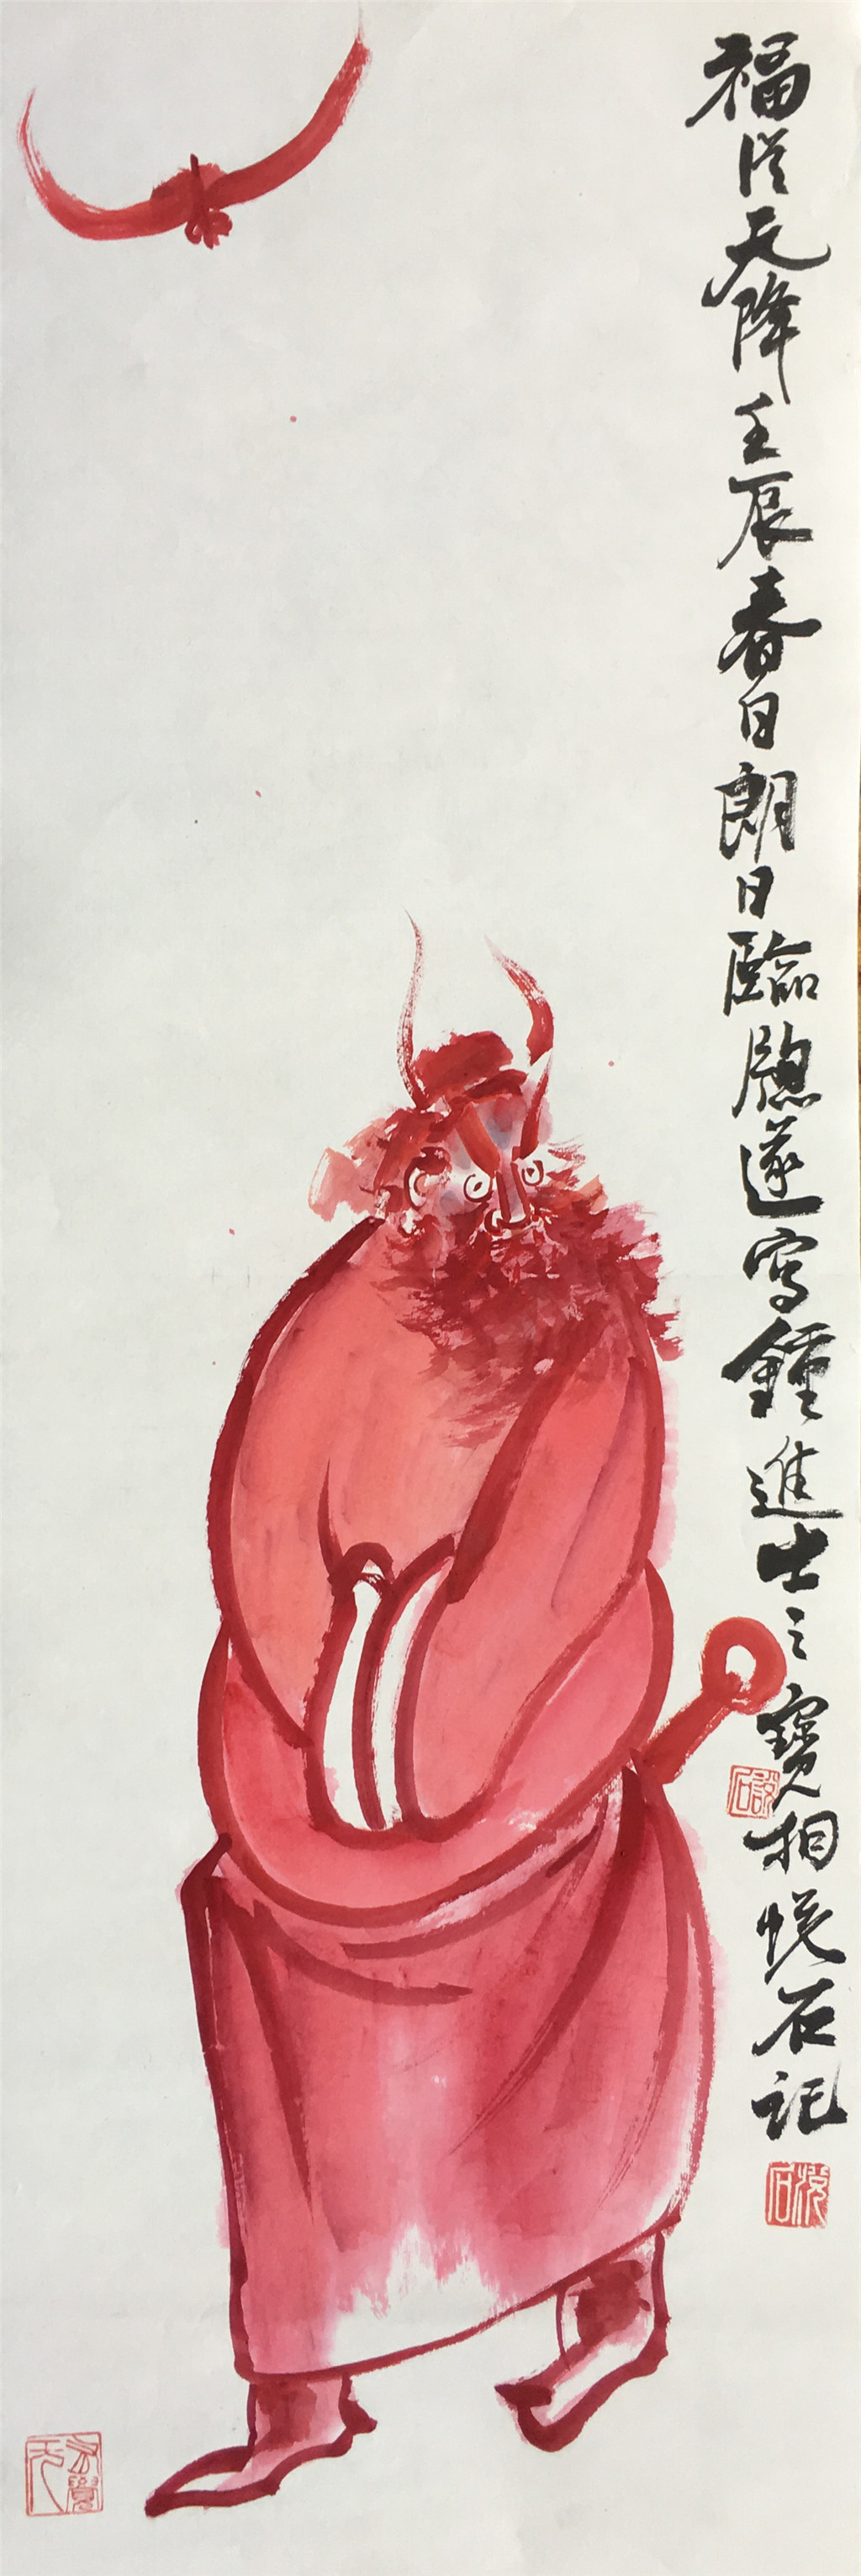 吴悦石 (1945-) 钟魁图